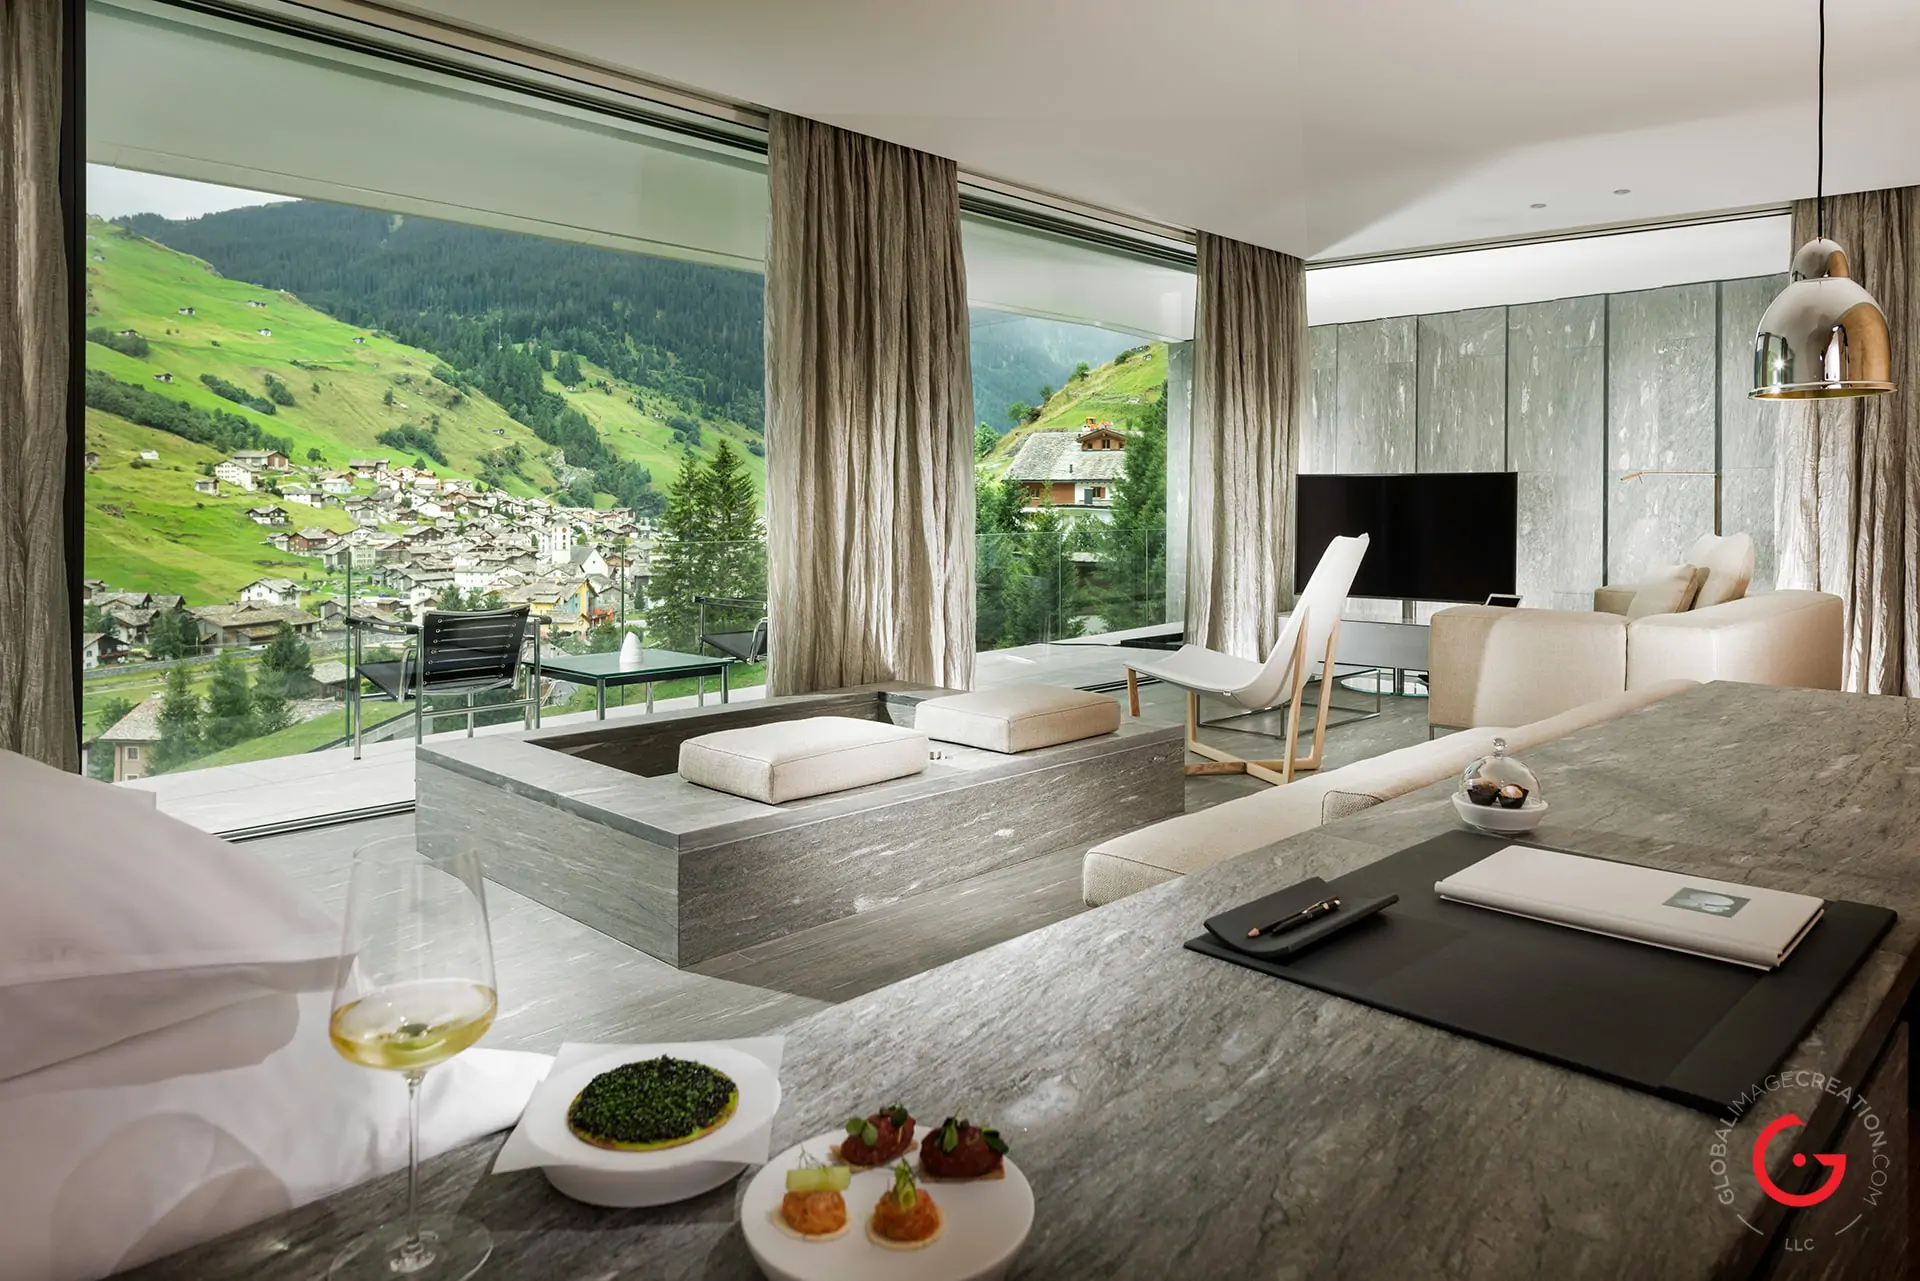 Hotel Photographers, Luxury Hotel Photography, Resort Photographer of Kengo Kuma Suite At 7132 Hotel, Vals Switzerland